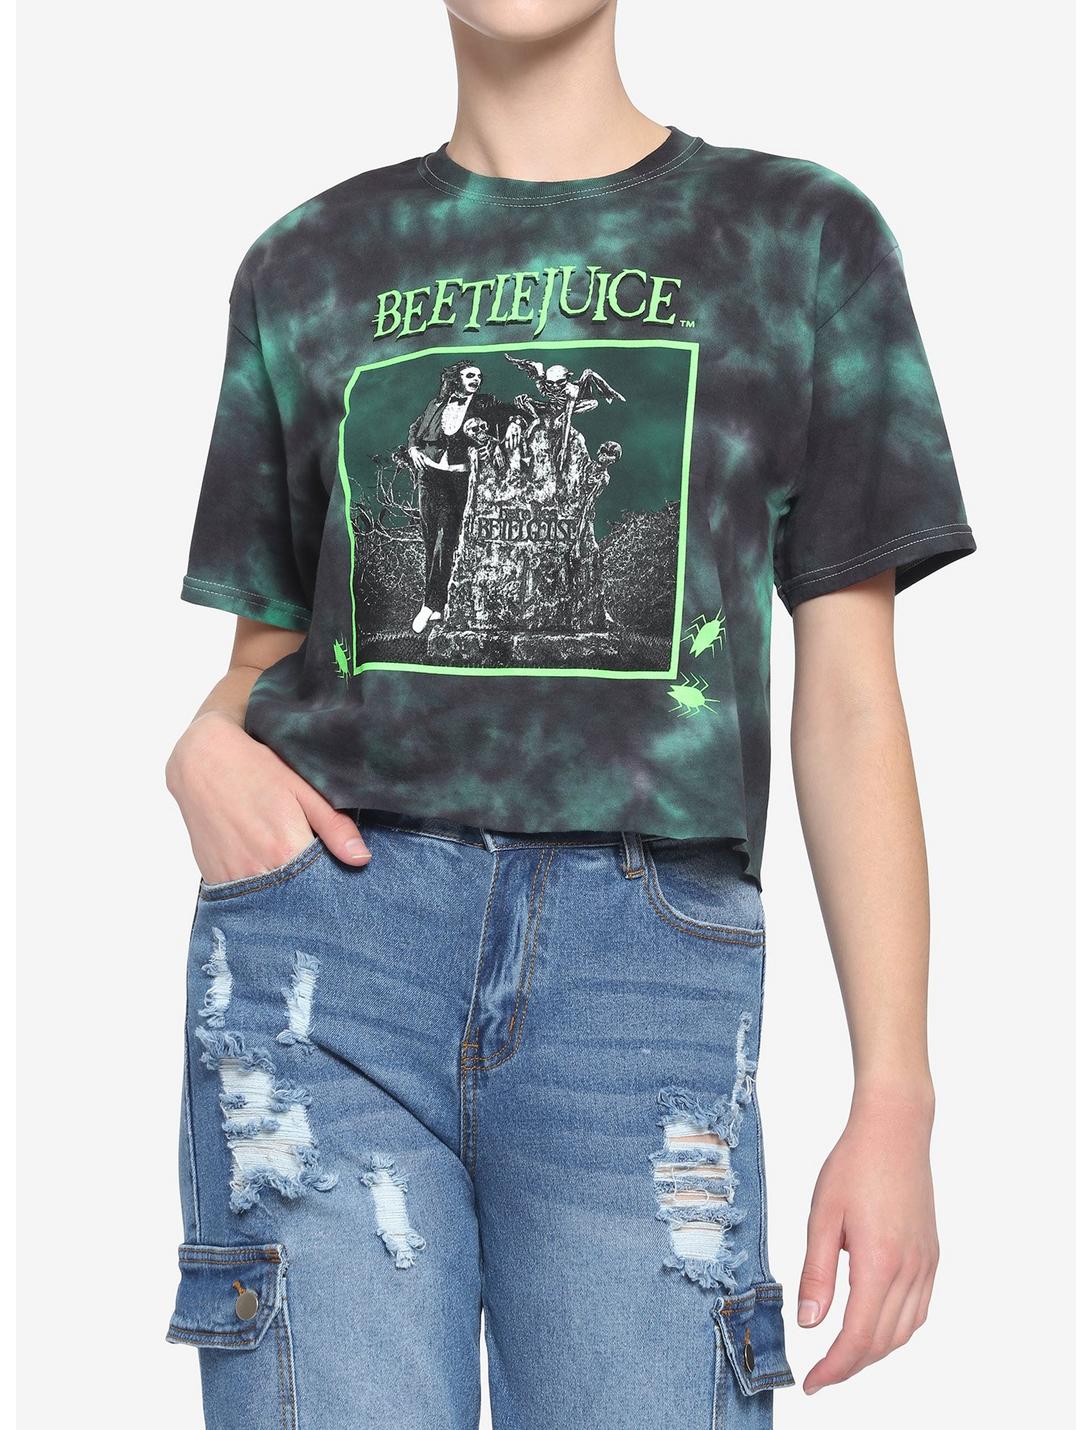 Beetlejuice Tombstone Tie-Dye Crop Girls T-Shirt, MULTI, hi-res